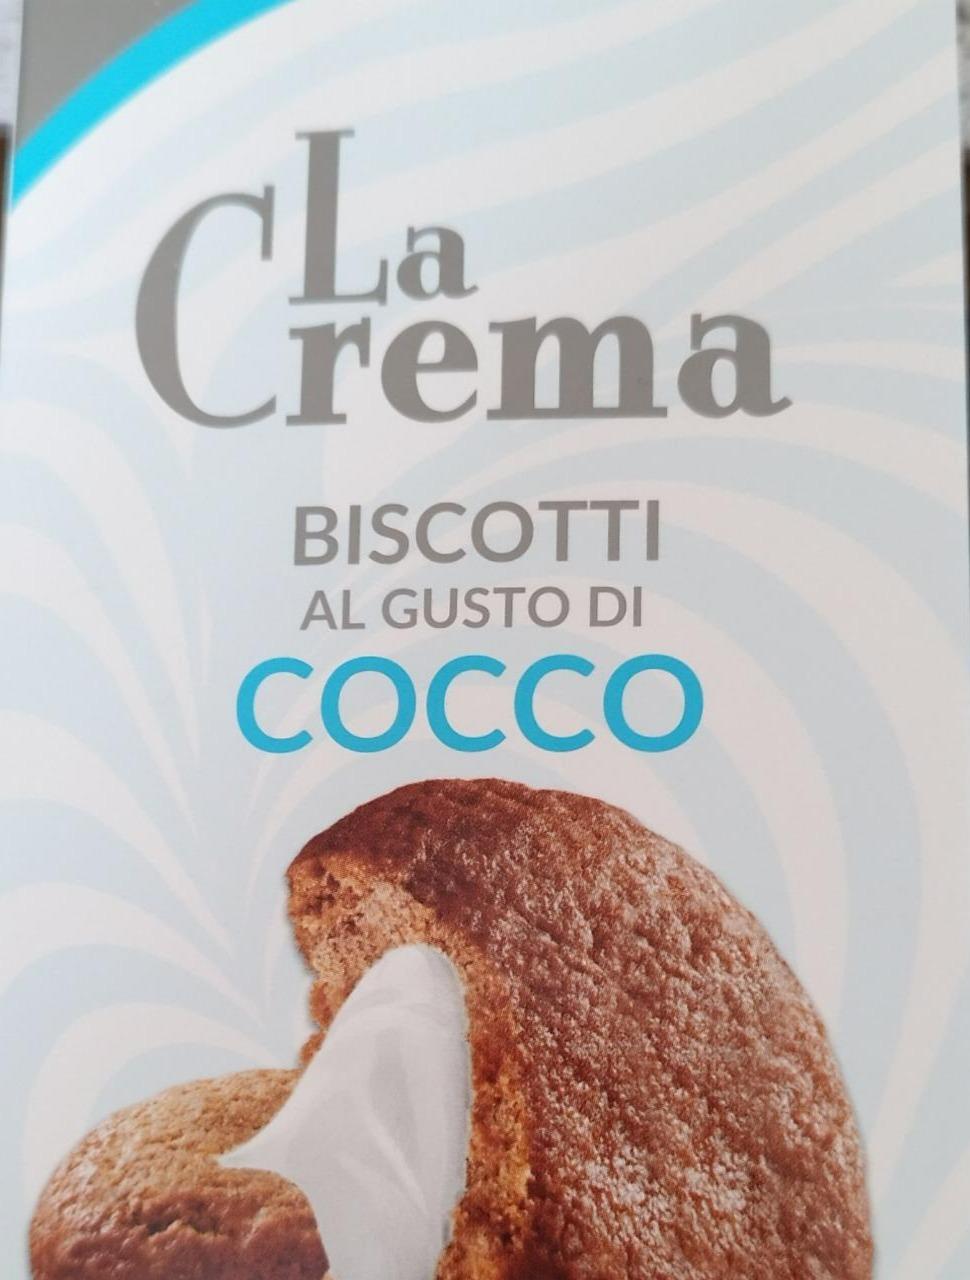 Fotografie - Biscotti al gusto di cocco La Crema